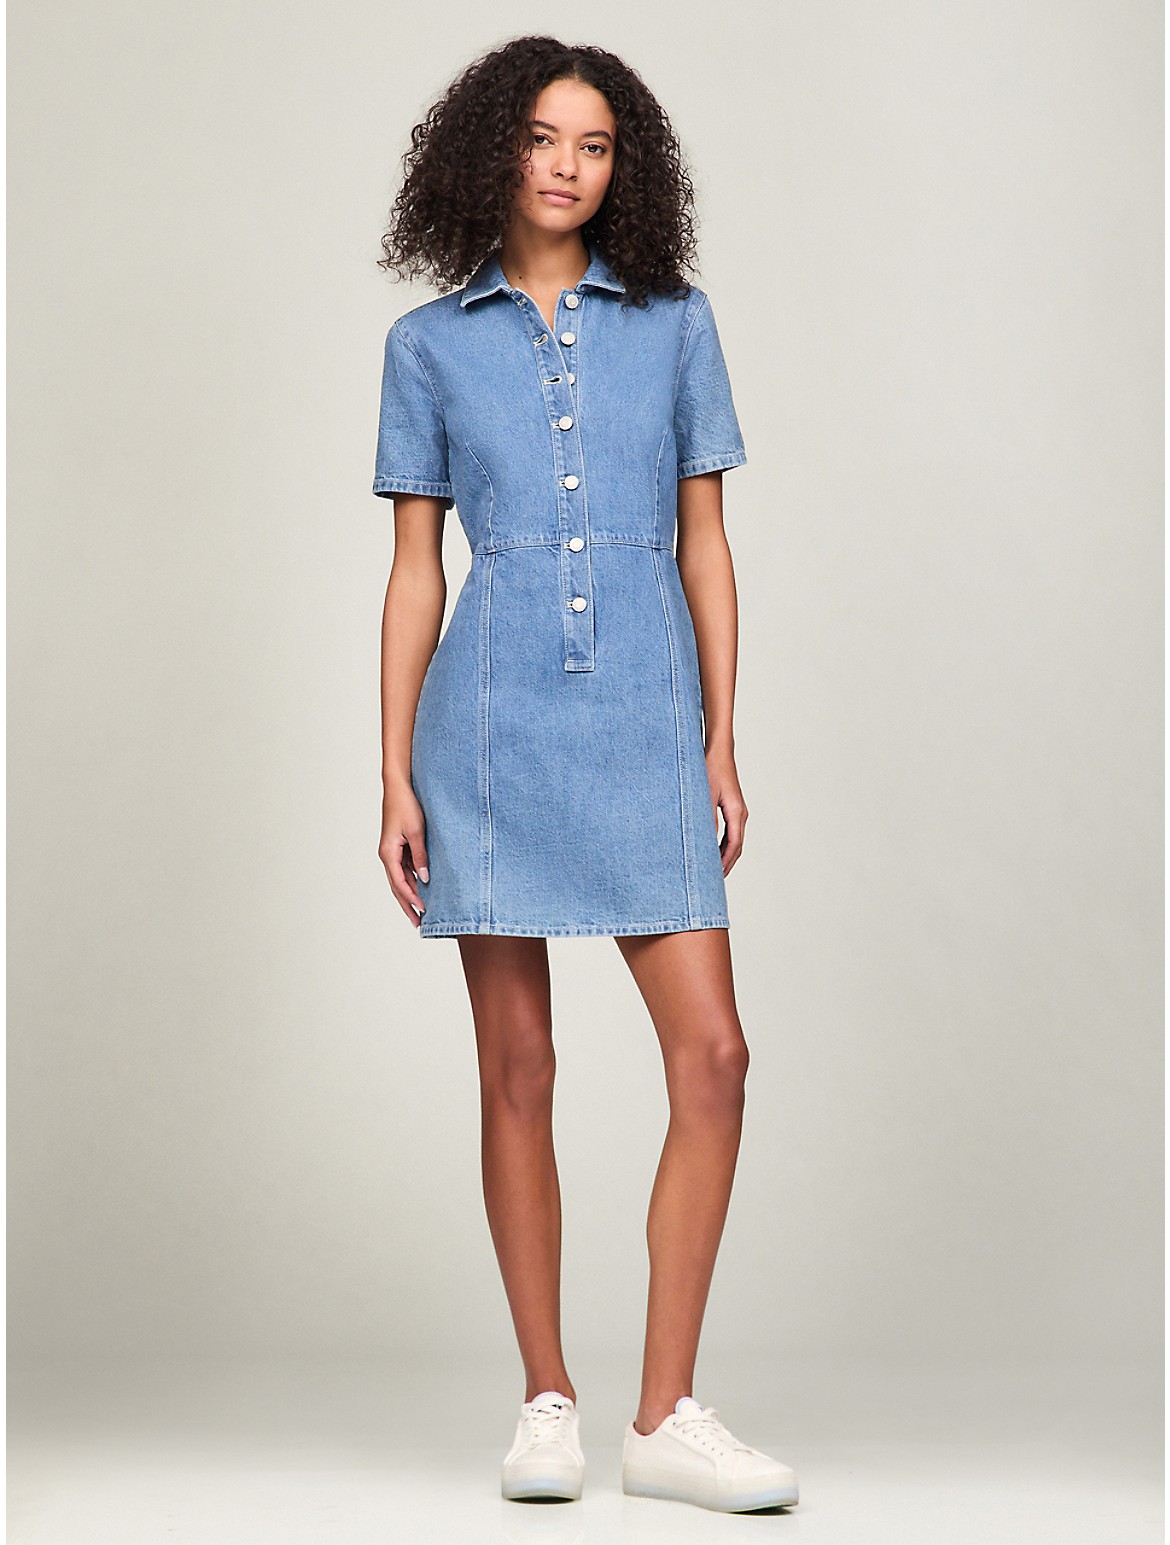 Tommy Hilfiger Women's Short-Sleeve Denim Dress - Blue - XL